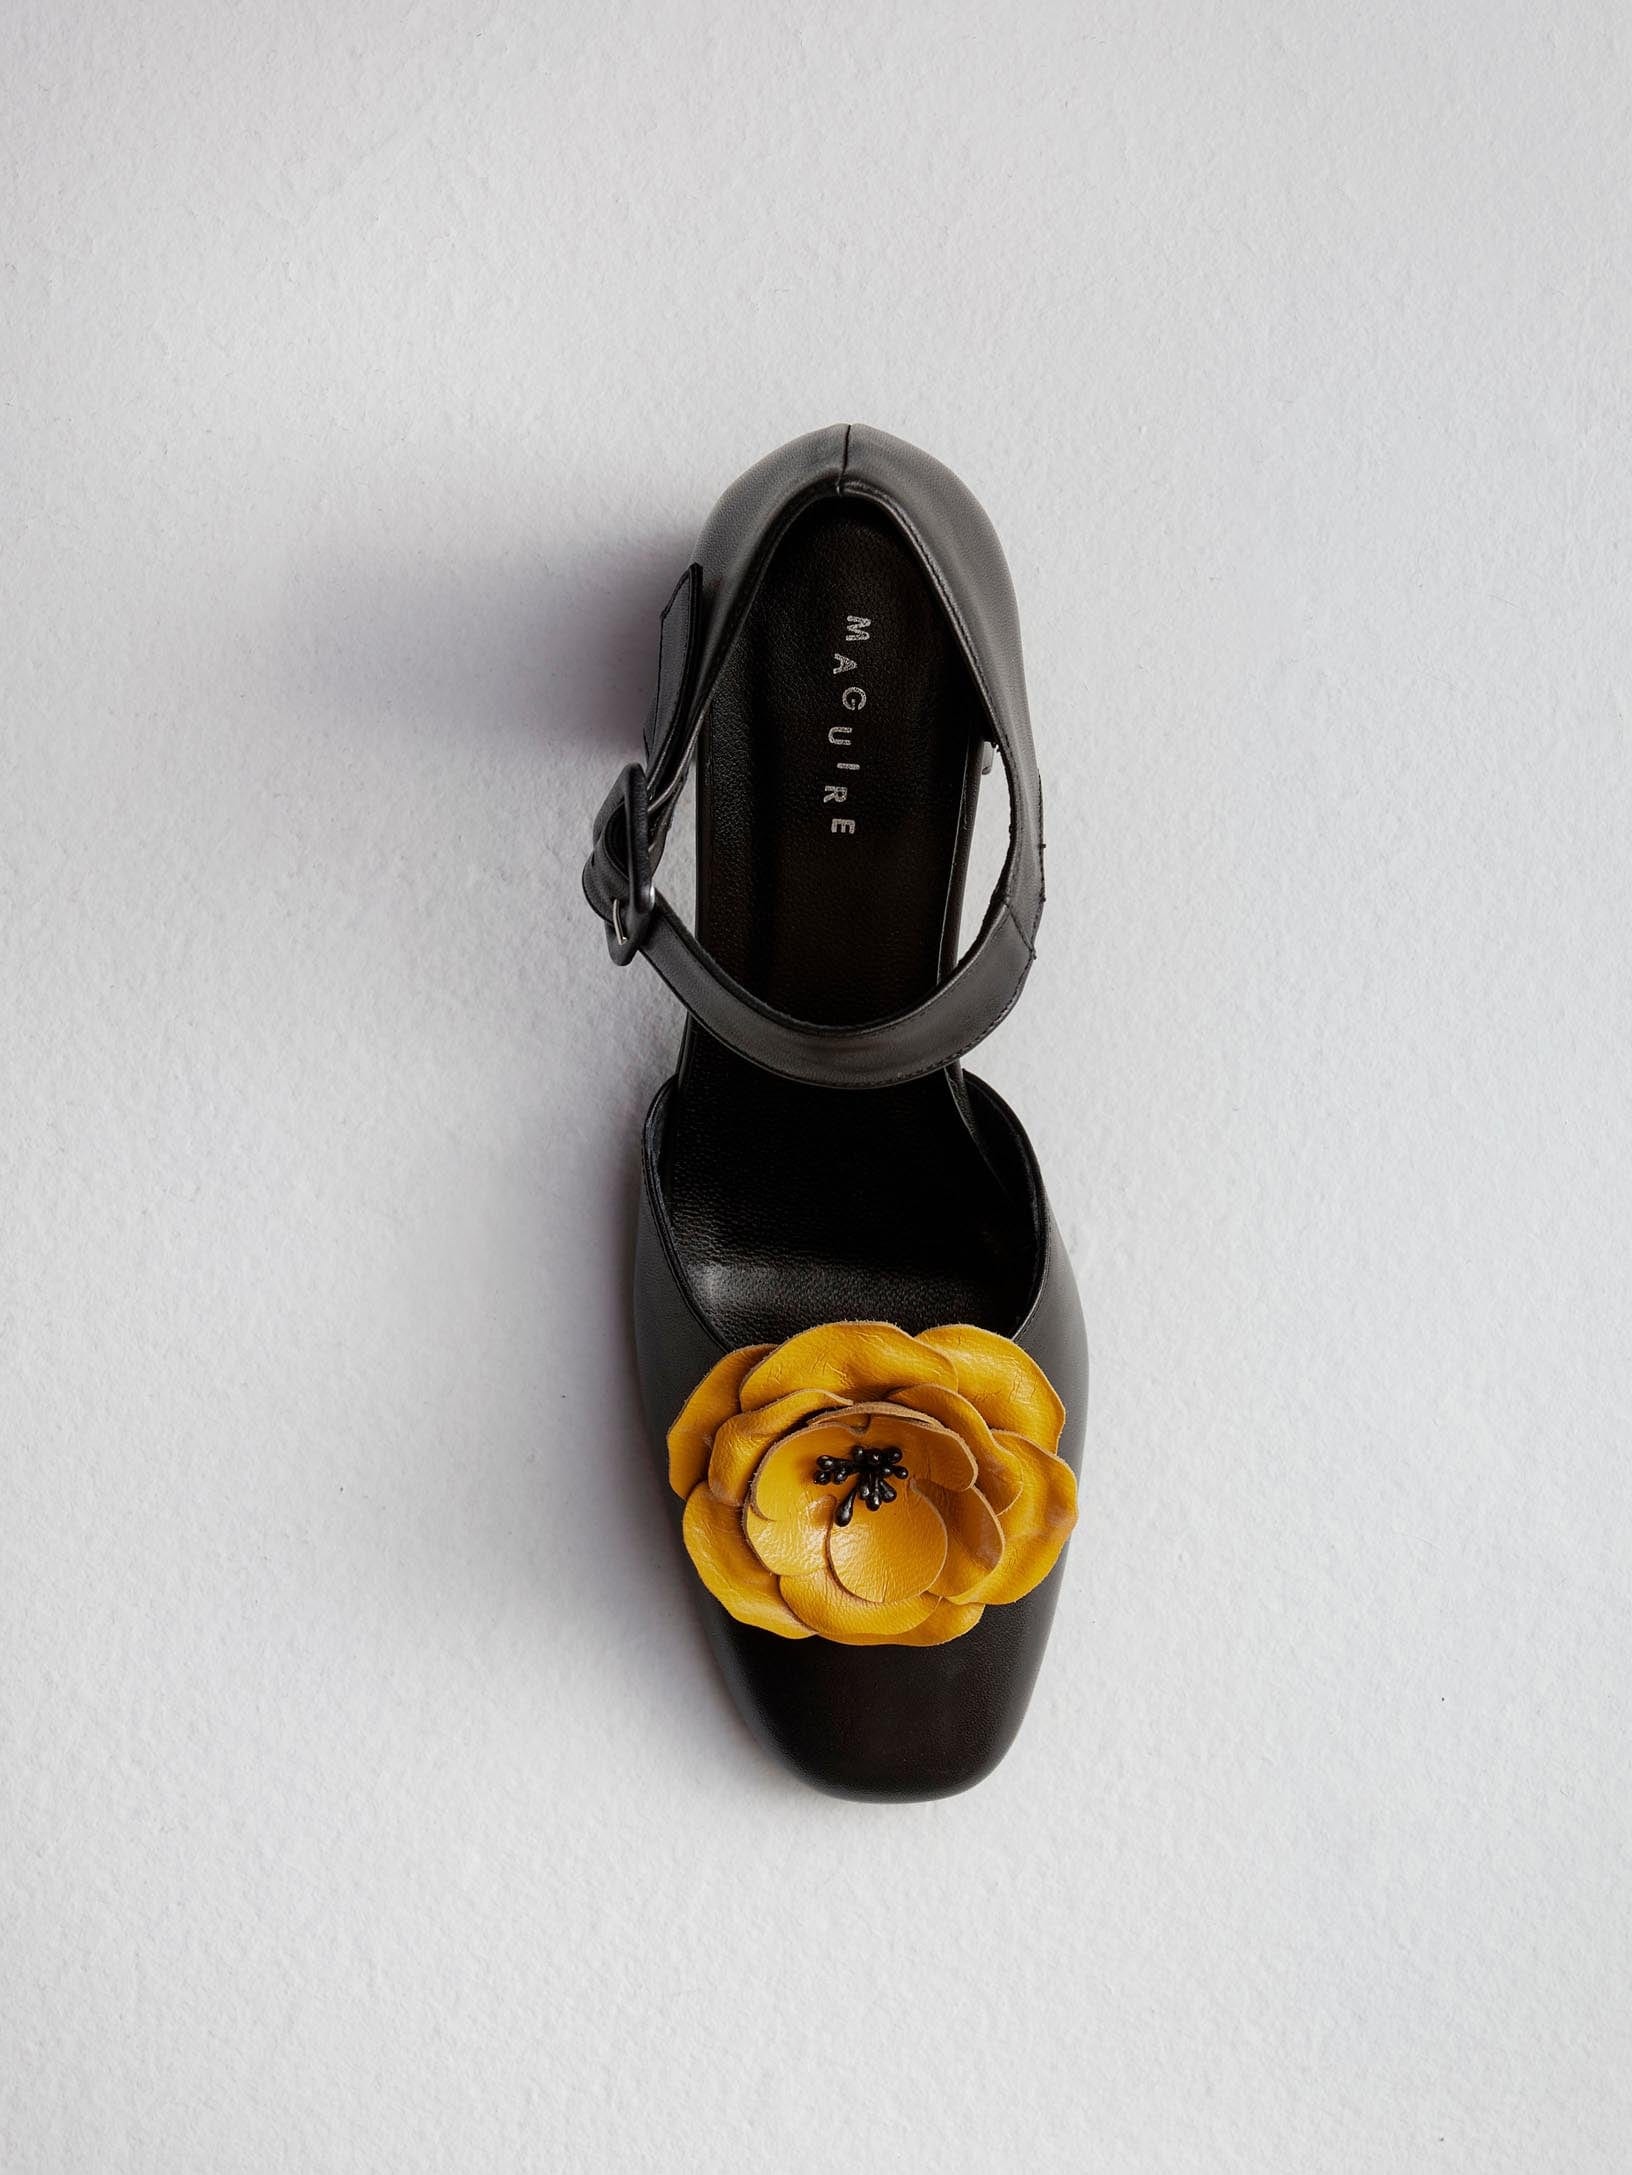 DIY Flower Shoe Clip Accessories - FeltMagnet